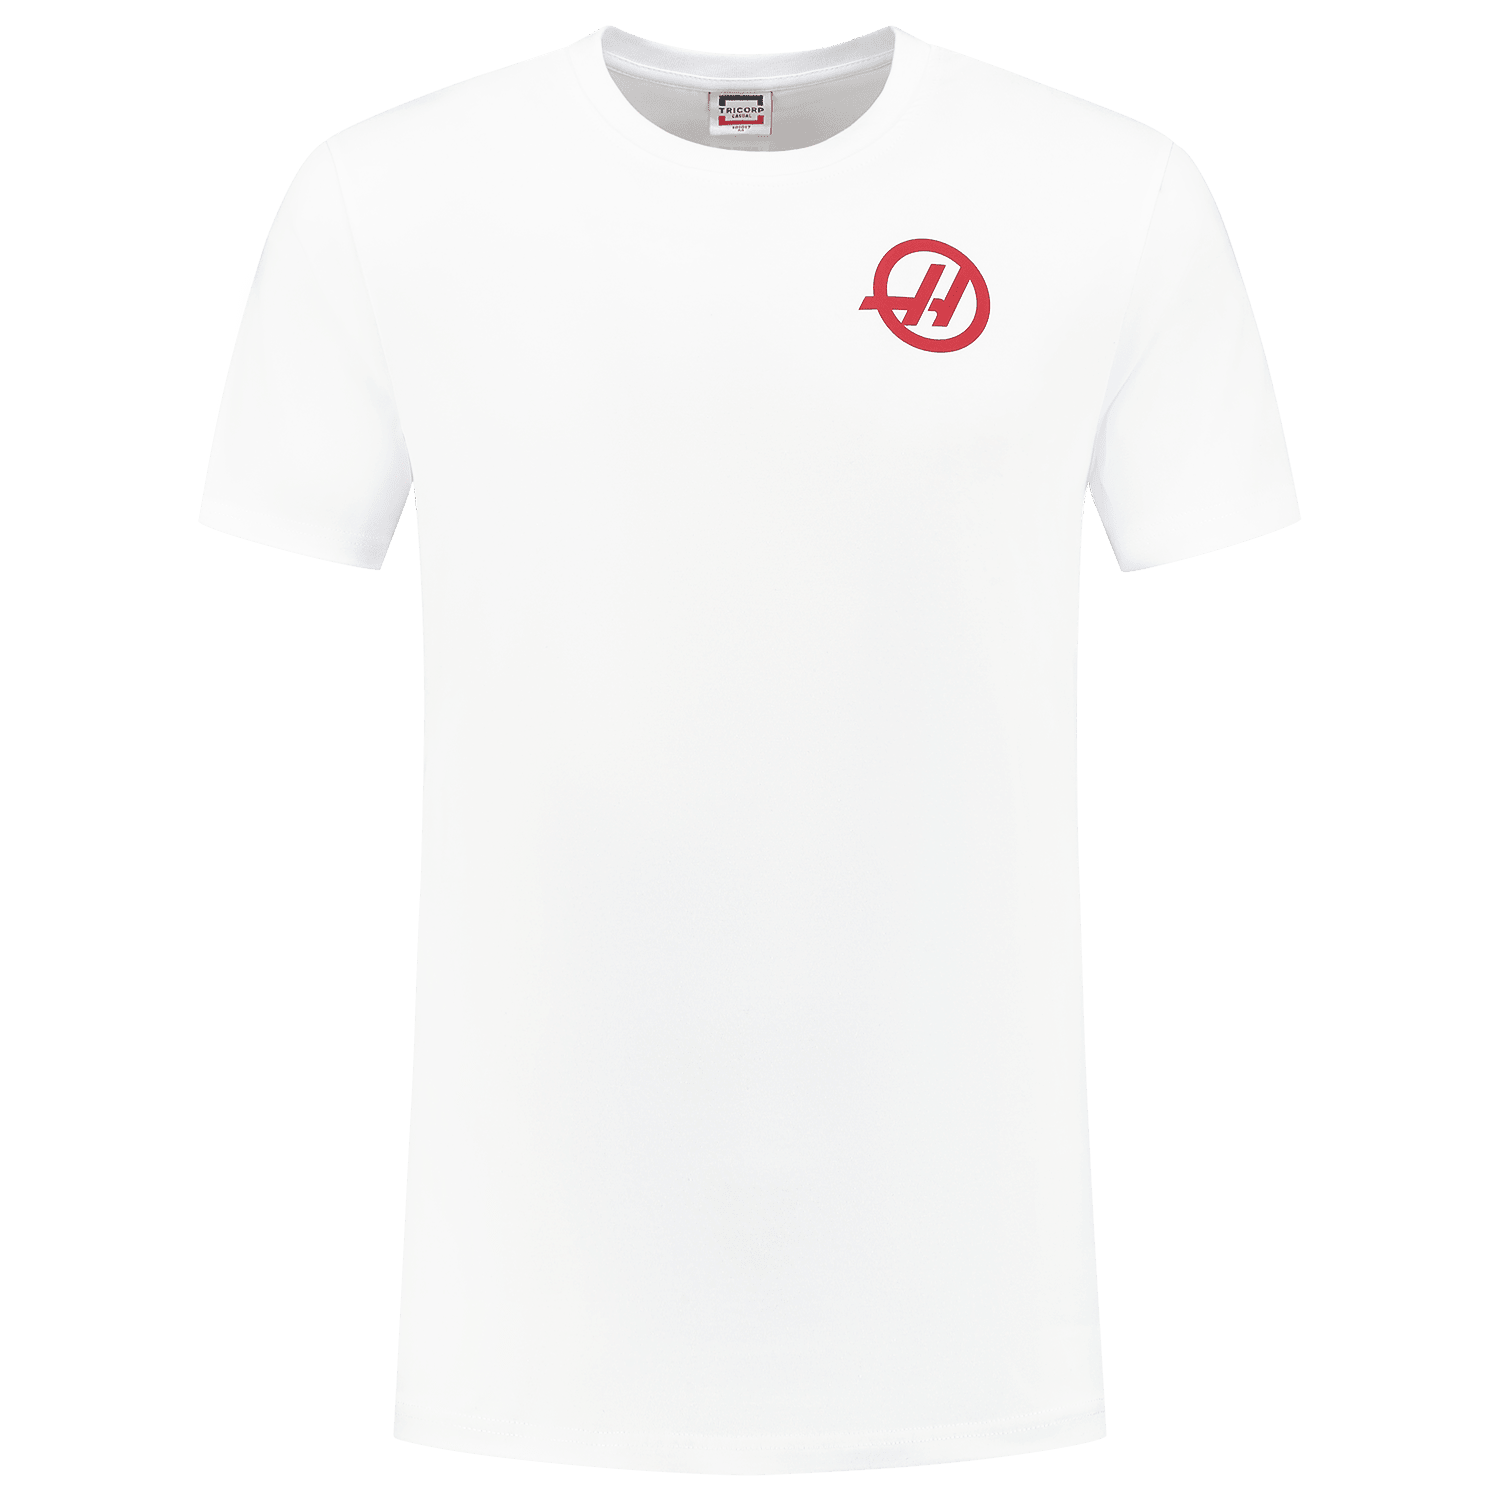 Haas Racing F1 Small Logo T-Shirt - Black/White